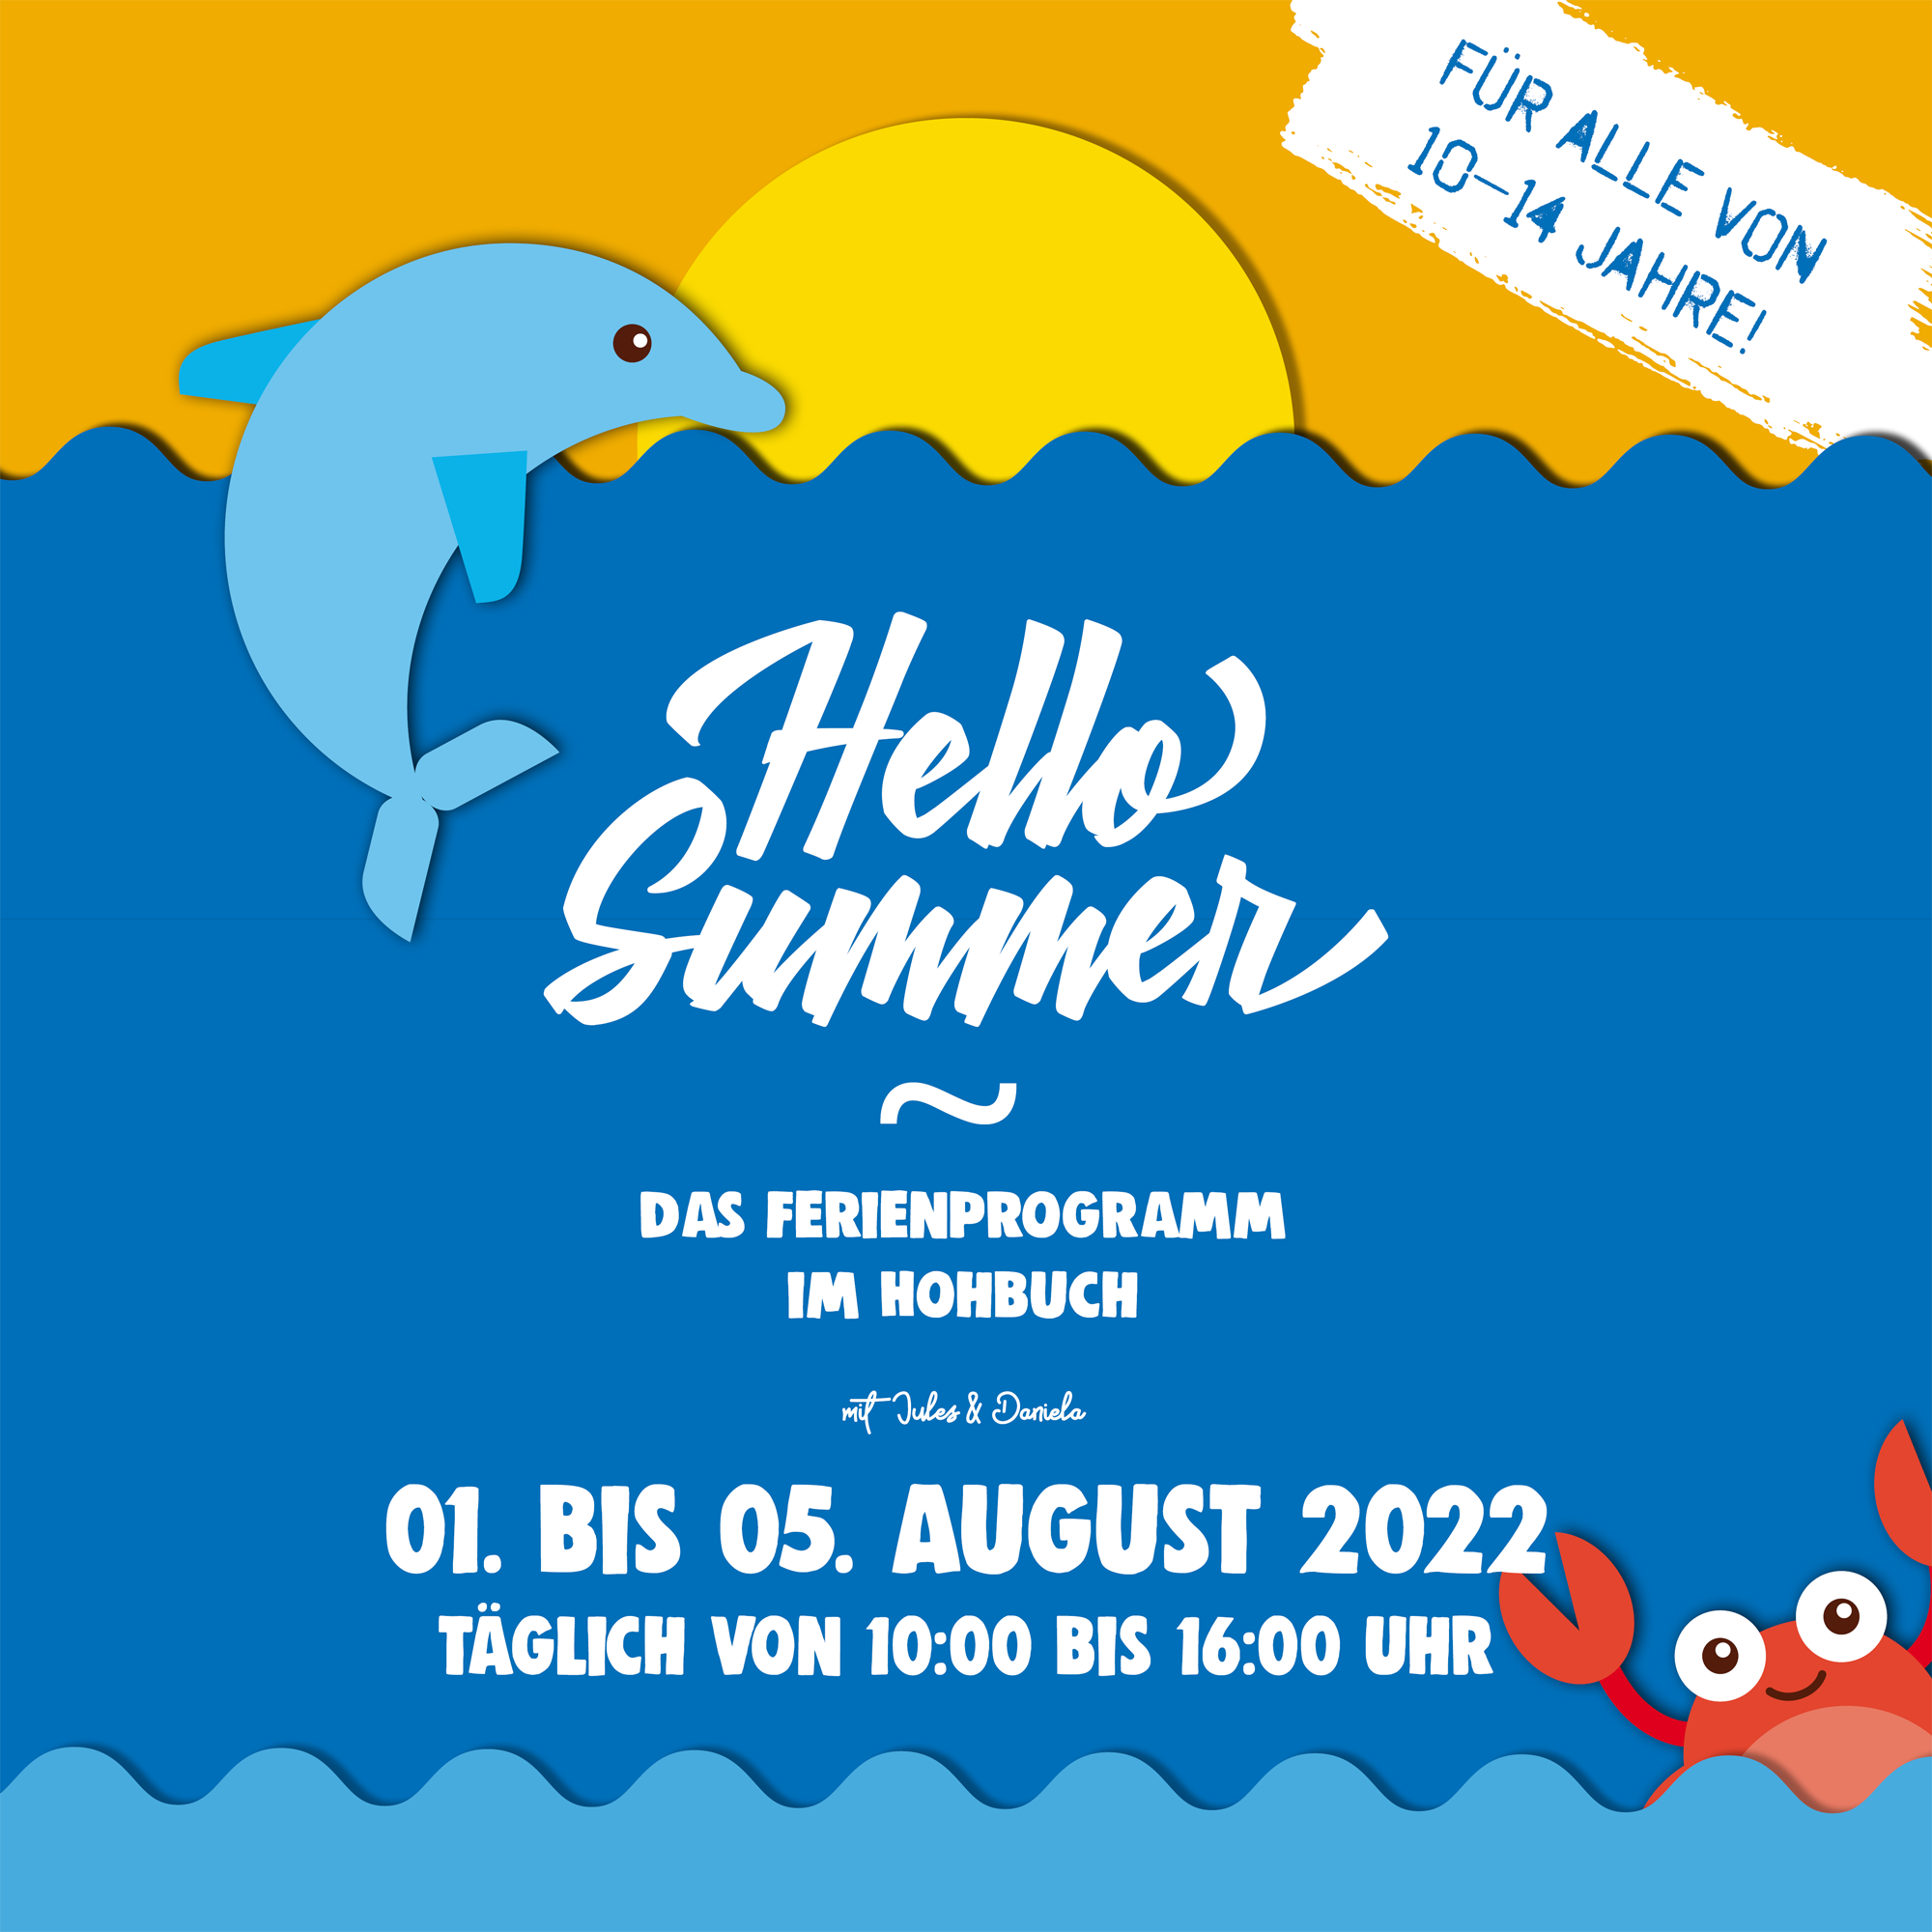 Hello Summer – Das Ferienprogramm im Hohbuch